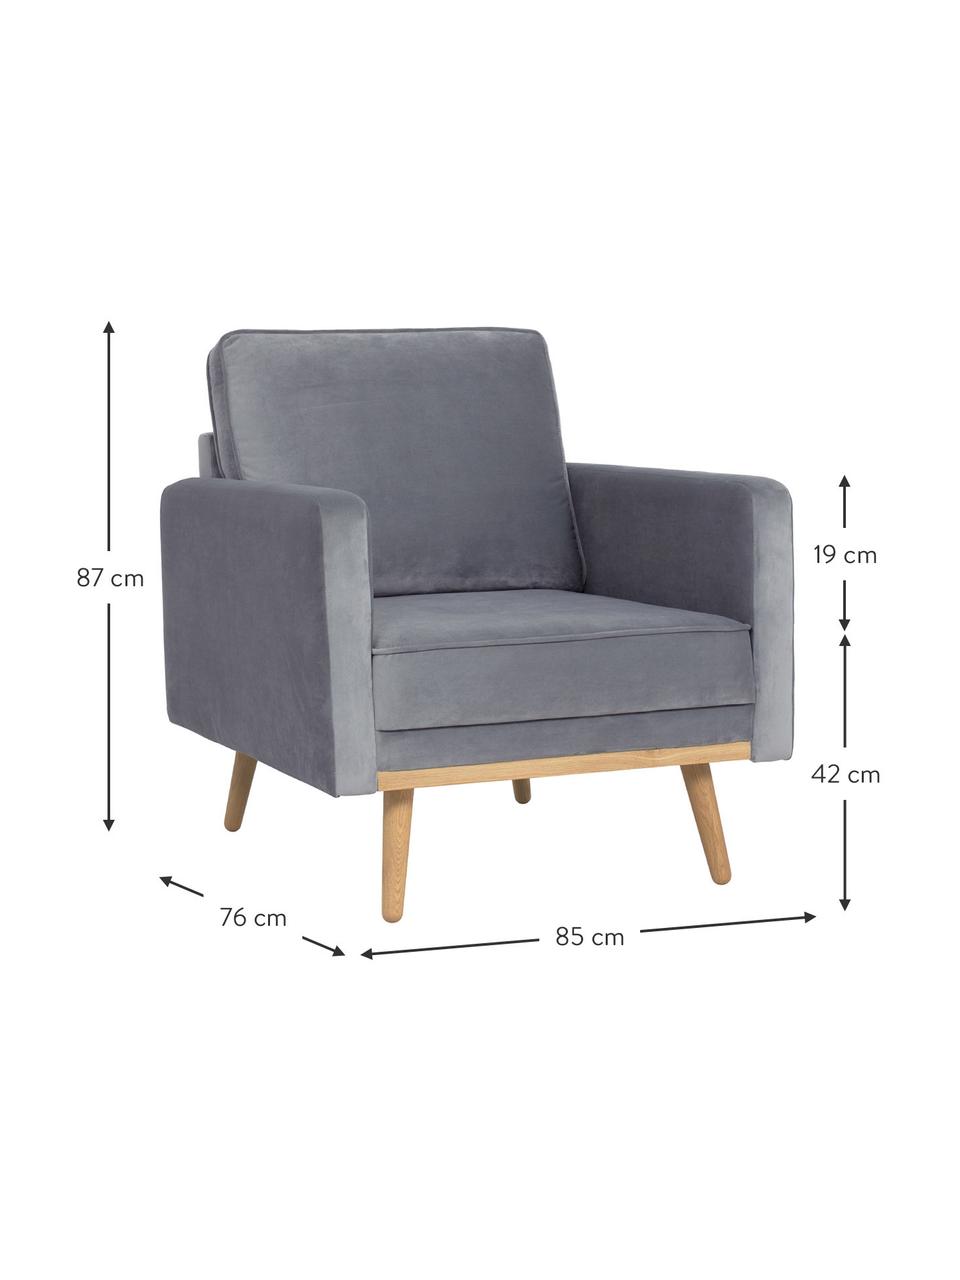 Fluwelen fauteuil Saint in grijs met eikenhouten poten, Bekleding: fluweel (polyester), Frame: massief eikenhout, spaanp, Fluweel grijs, B 85 x D 76 cm